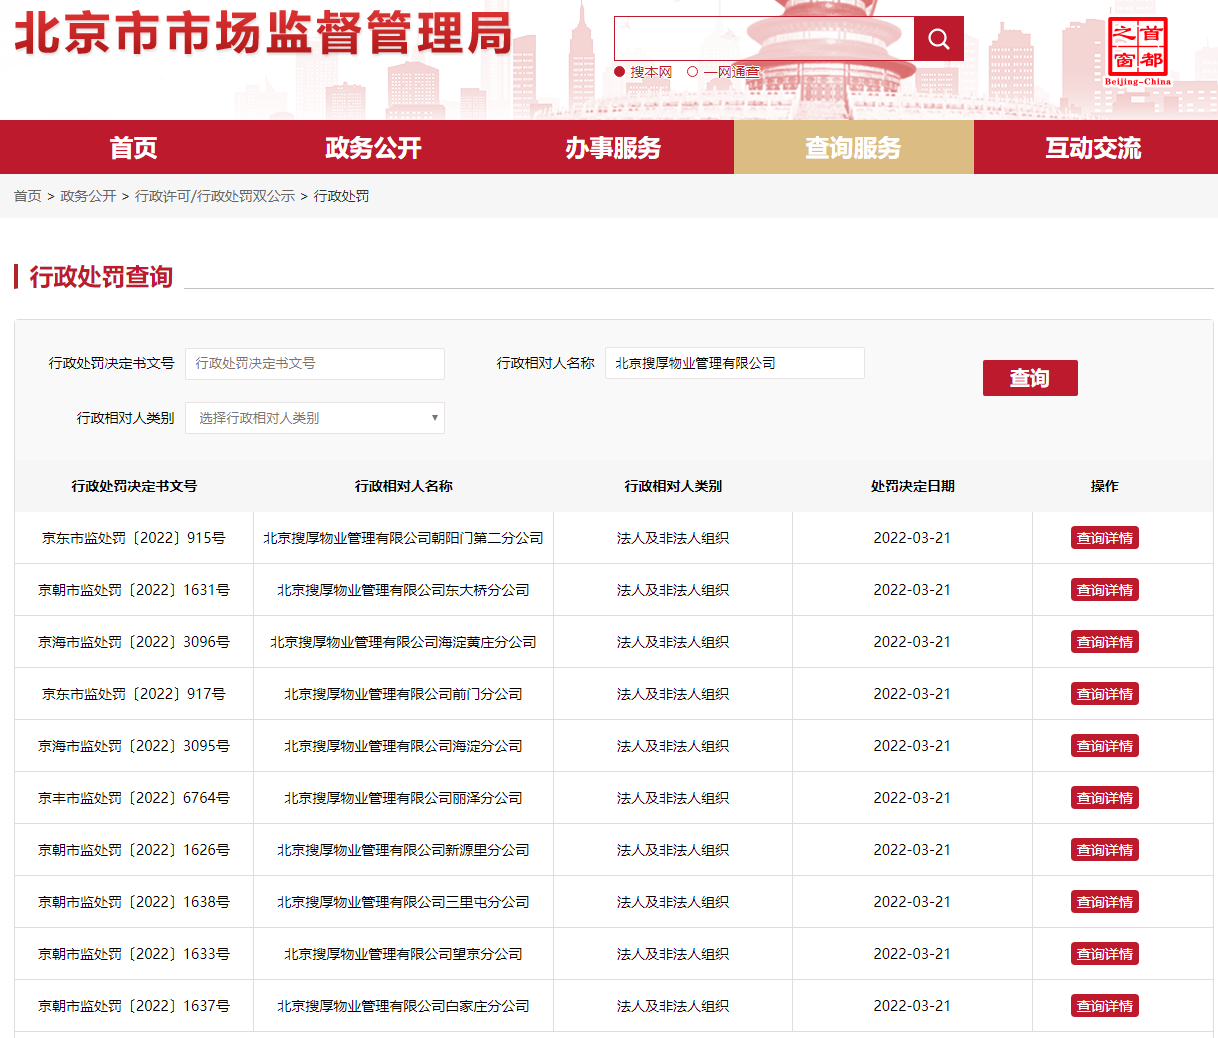 截图来源：北京市市场监督管理局网站